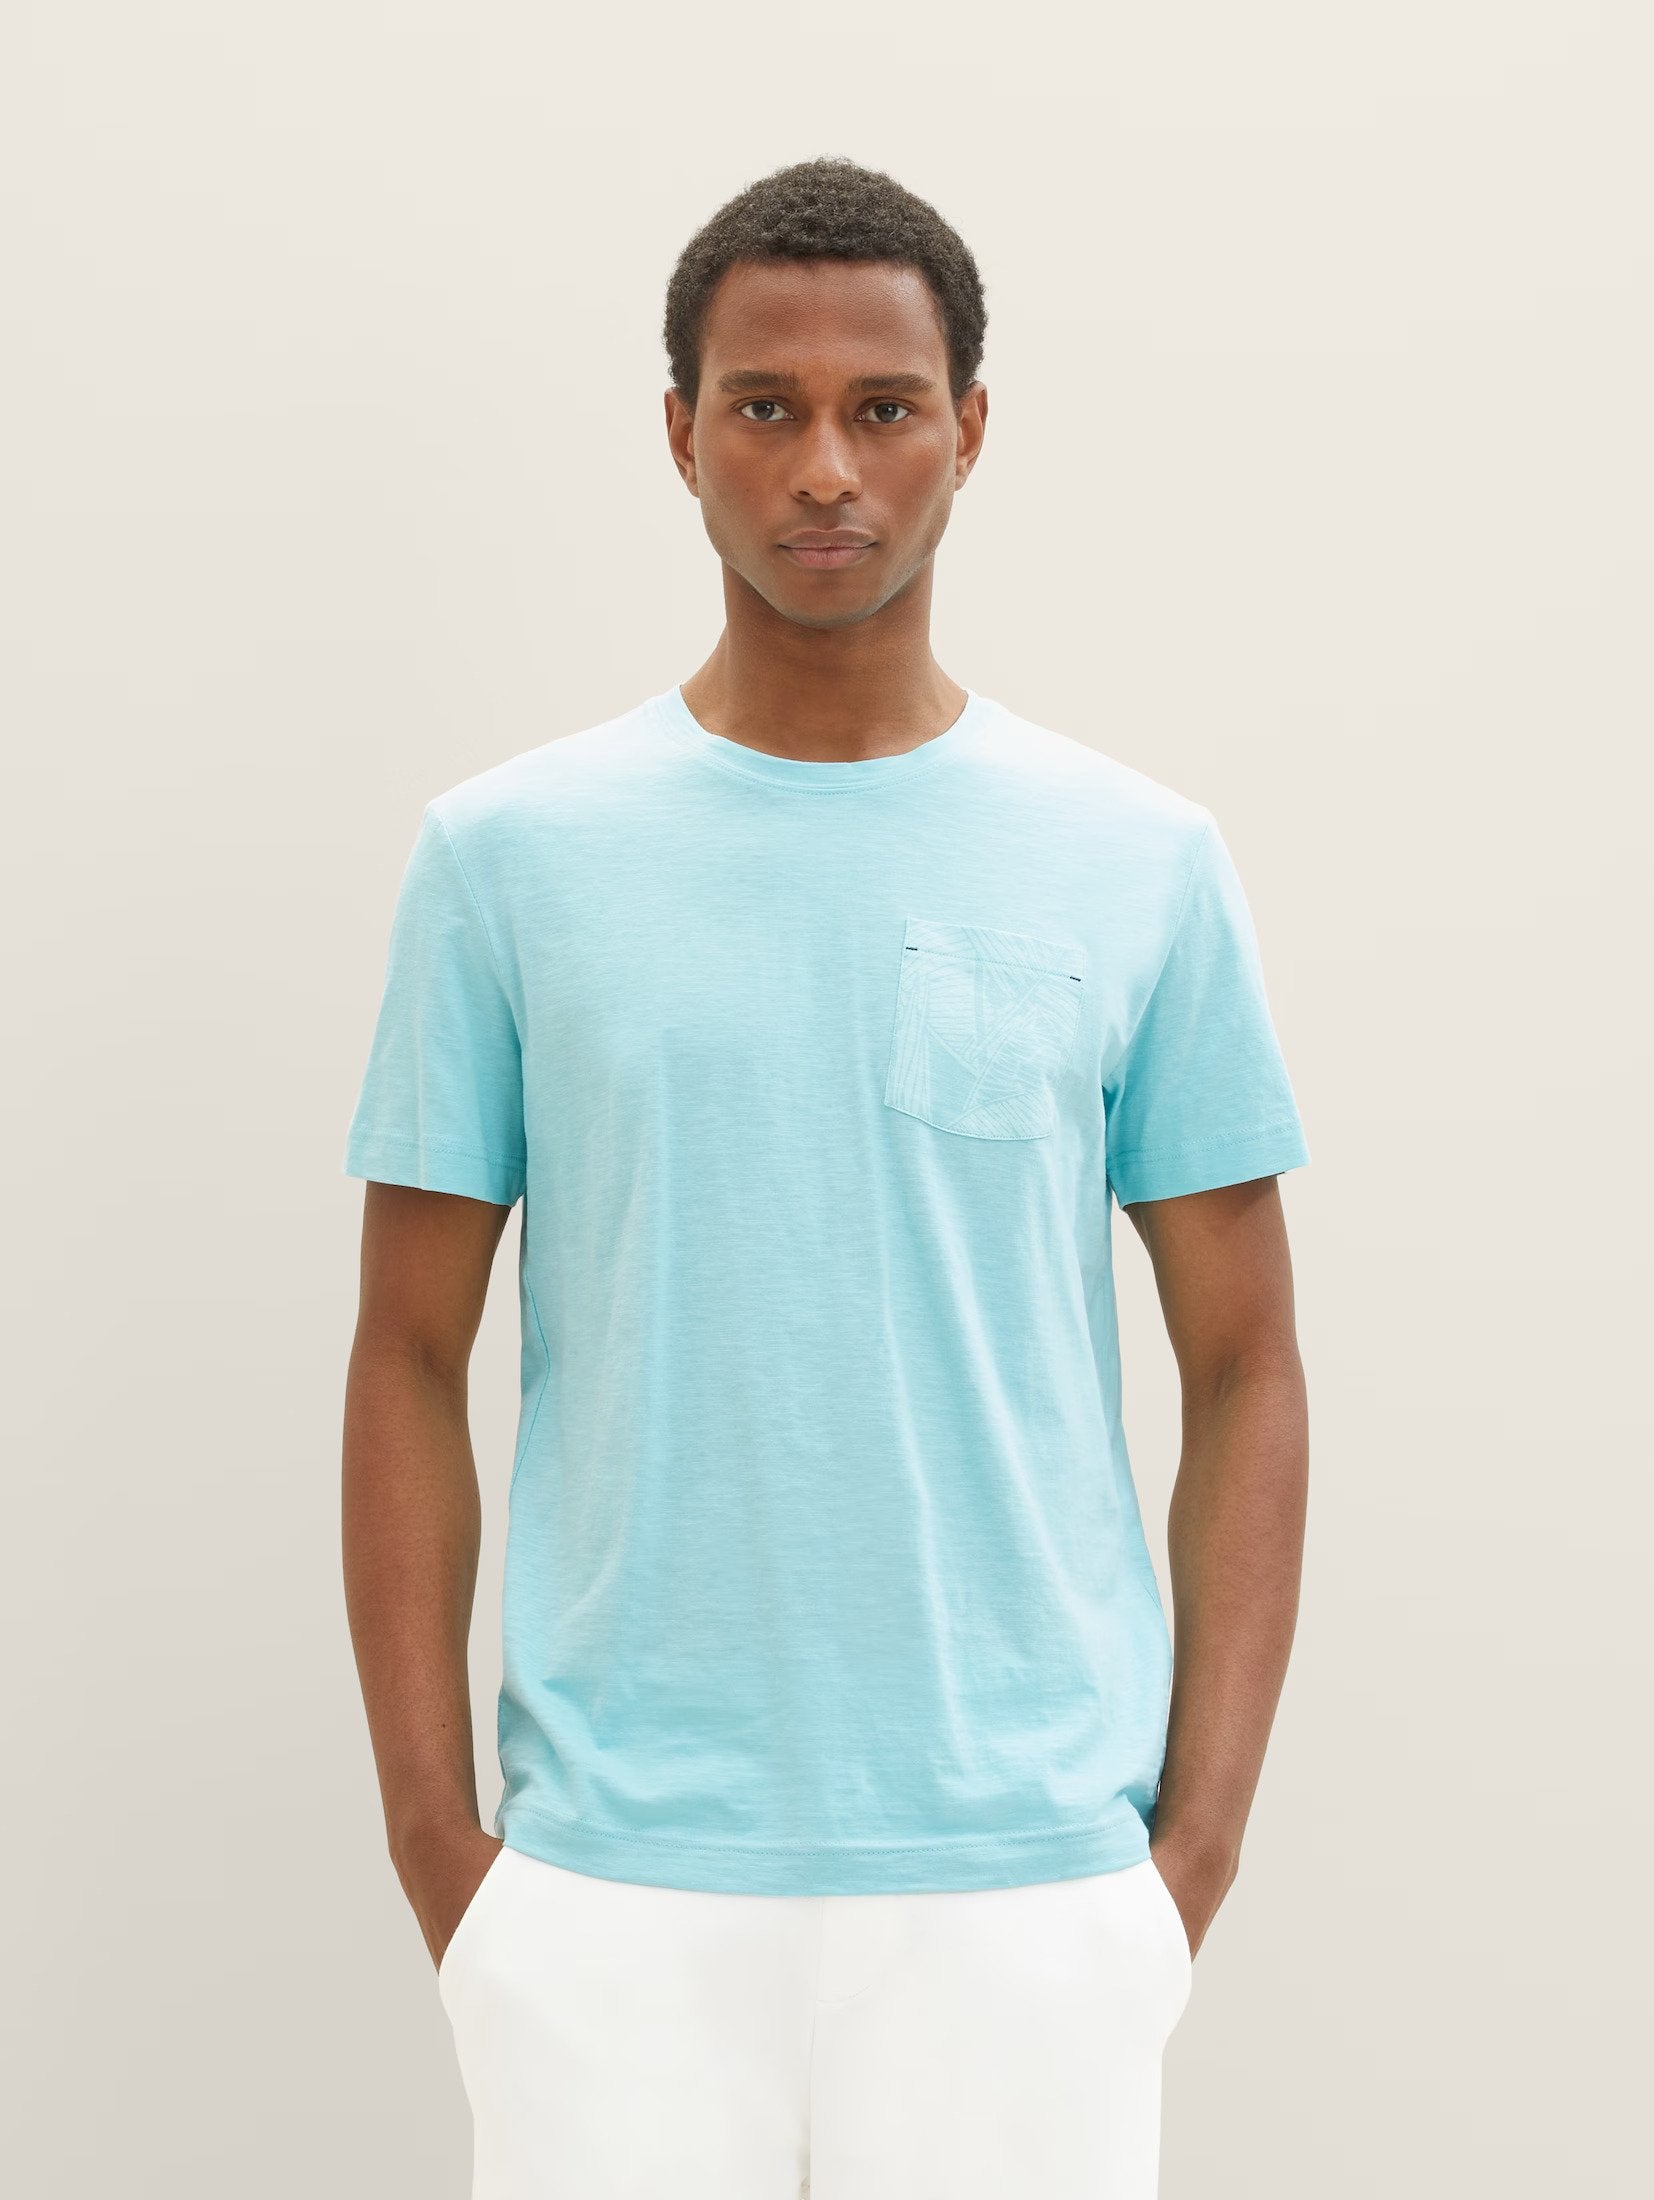 Tom Tailor Aqua Blue T-shirt With Chest Designed Pocket